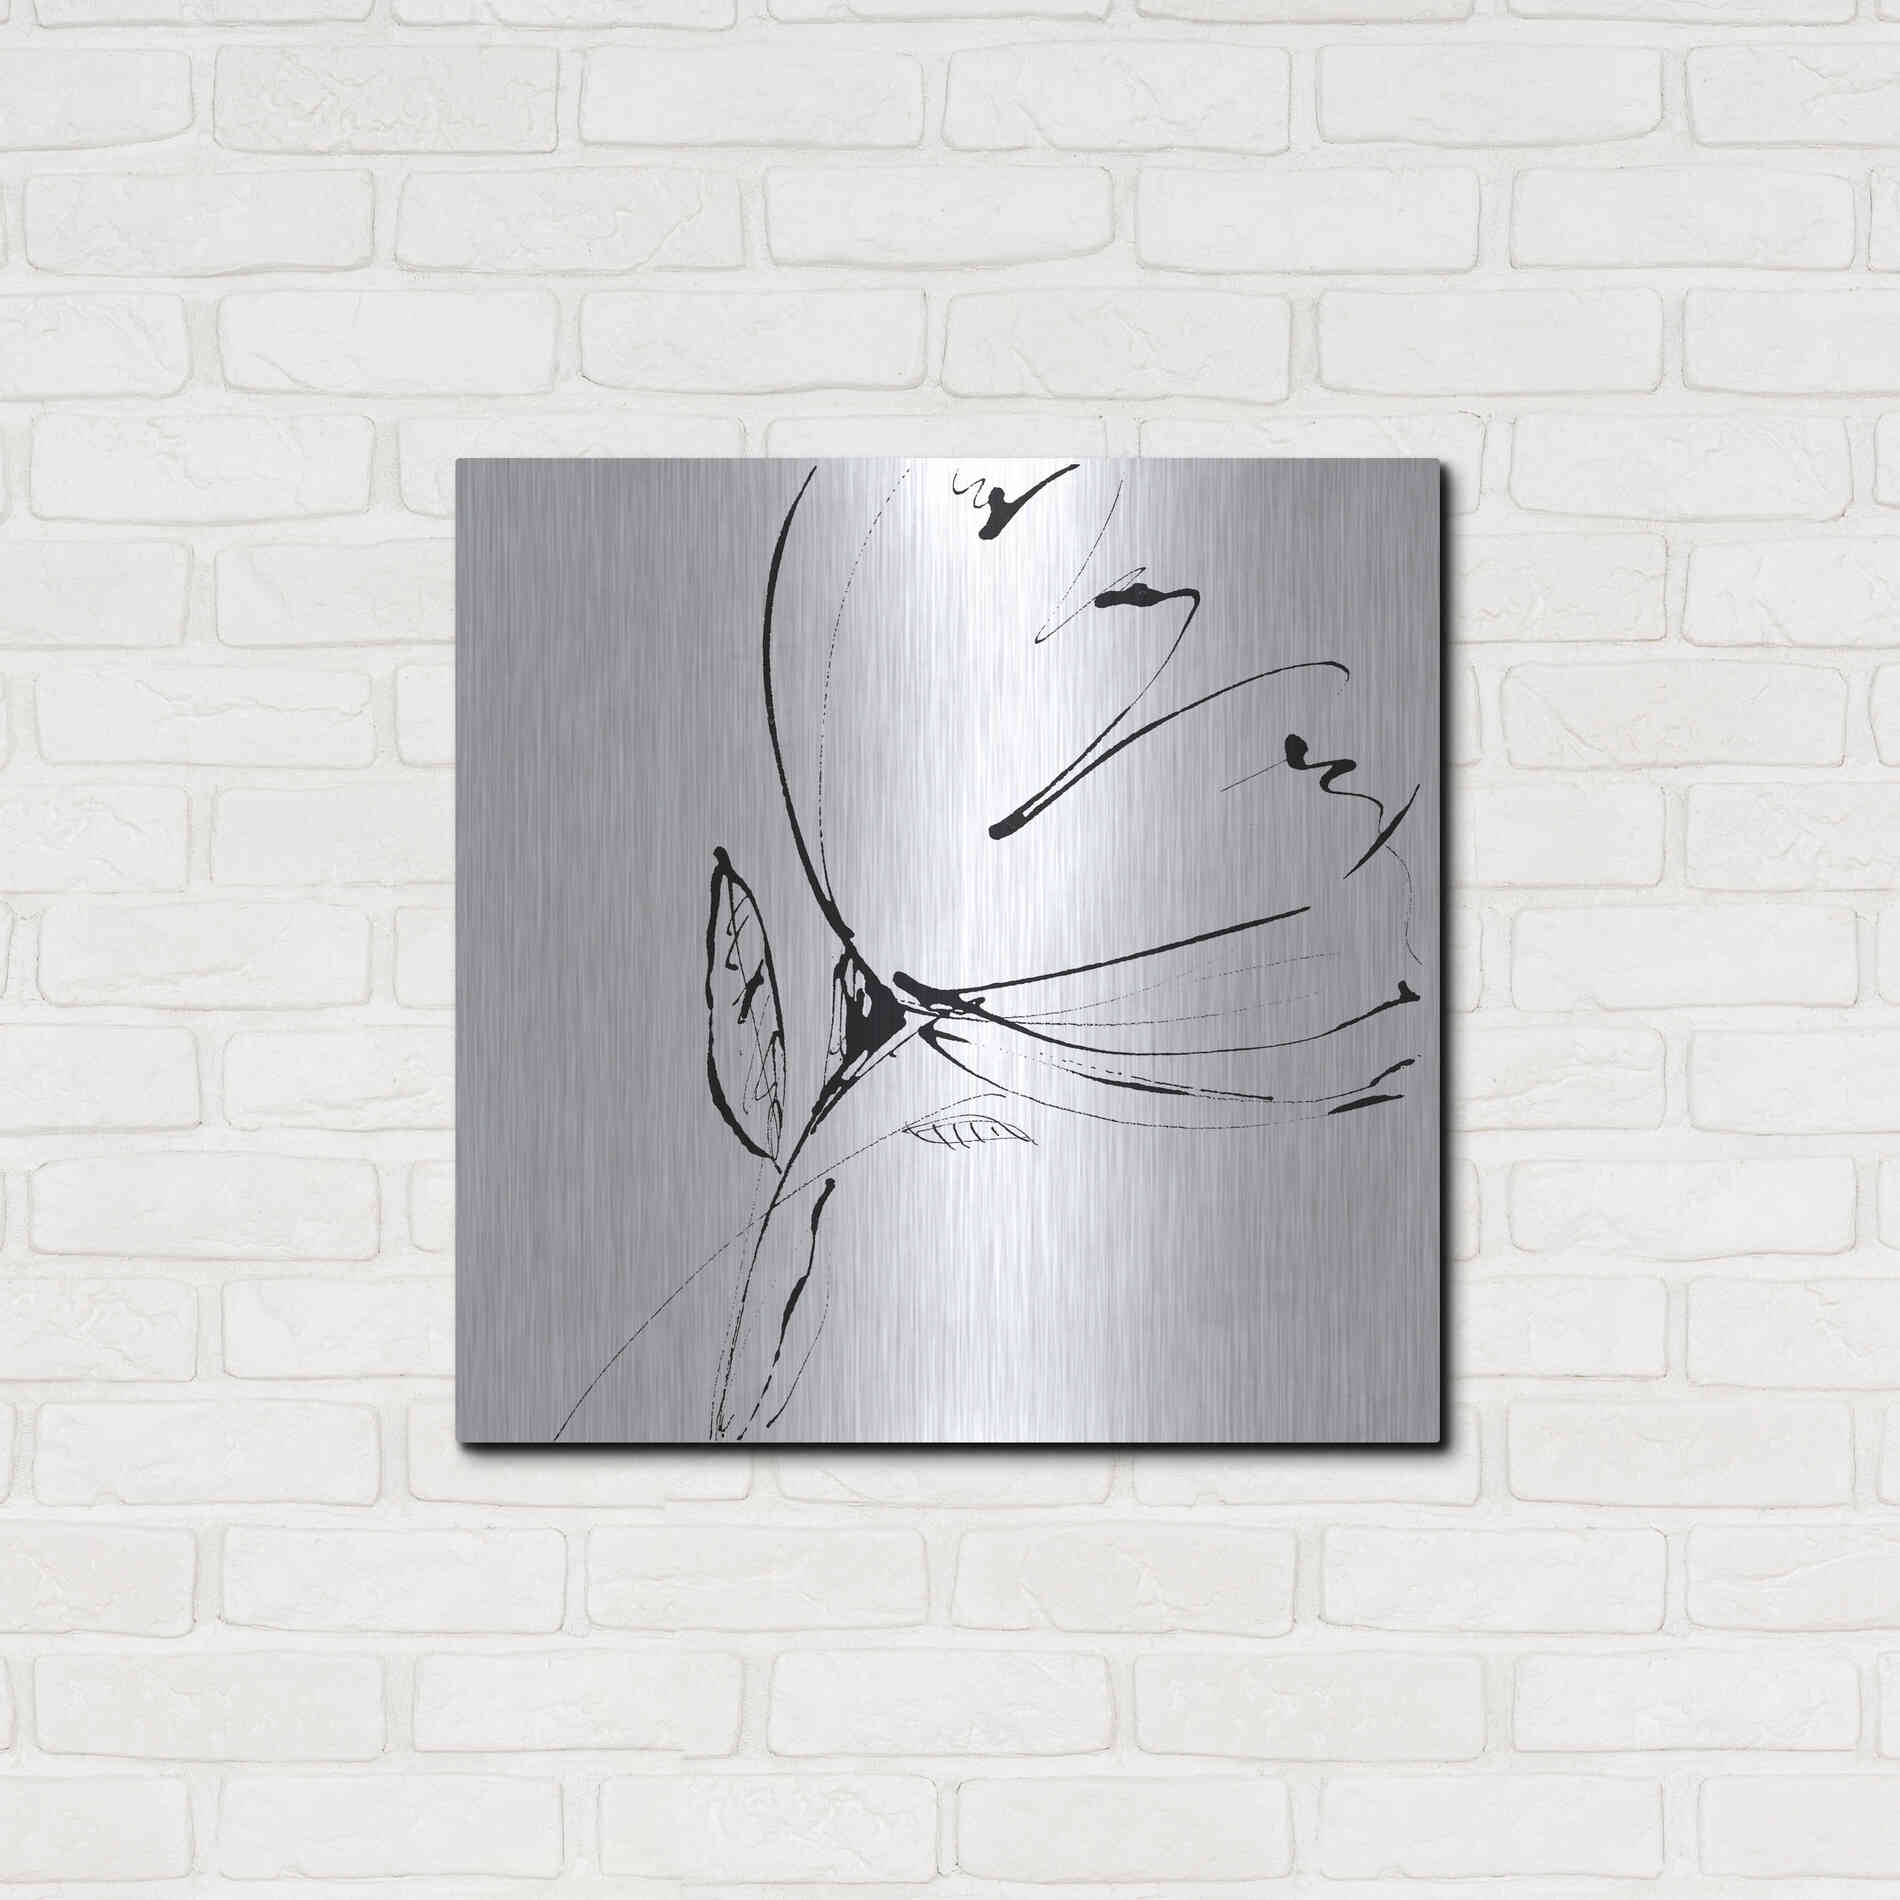 Luxe Metal Art 'Whisper 1' by Lesia Binkin Metal Wall Art,24x24